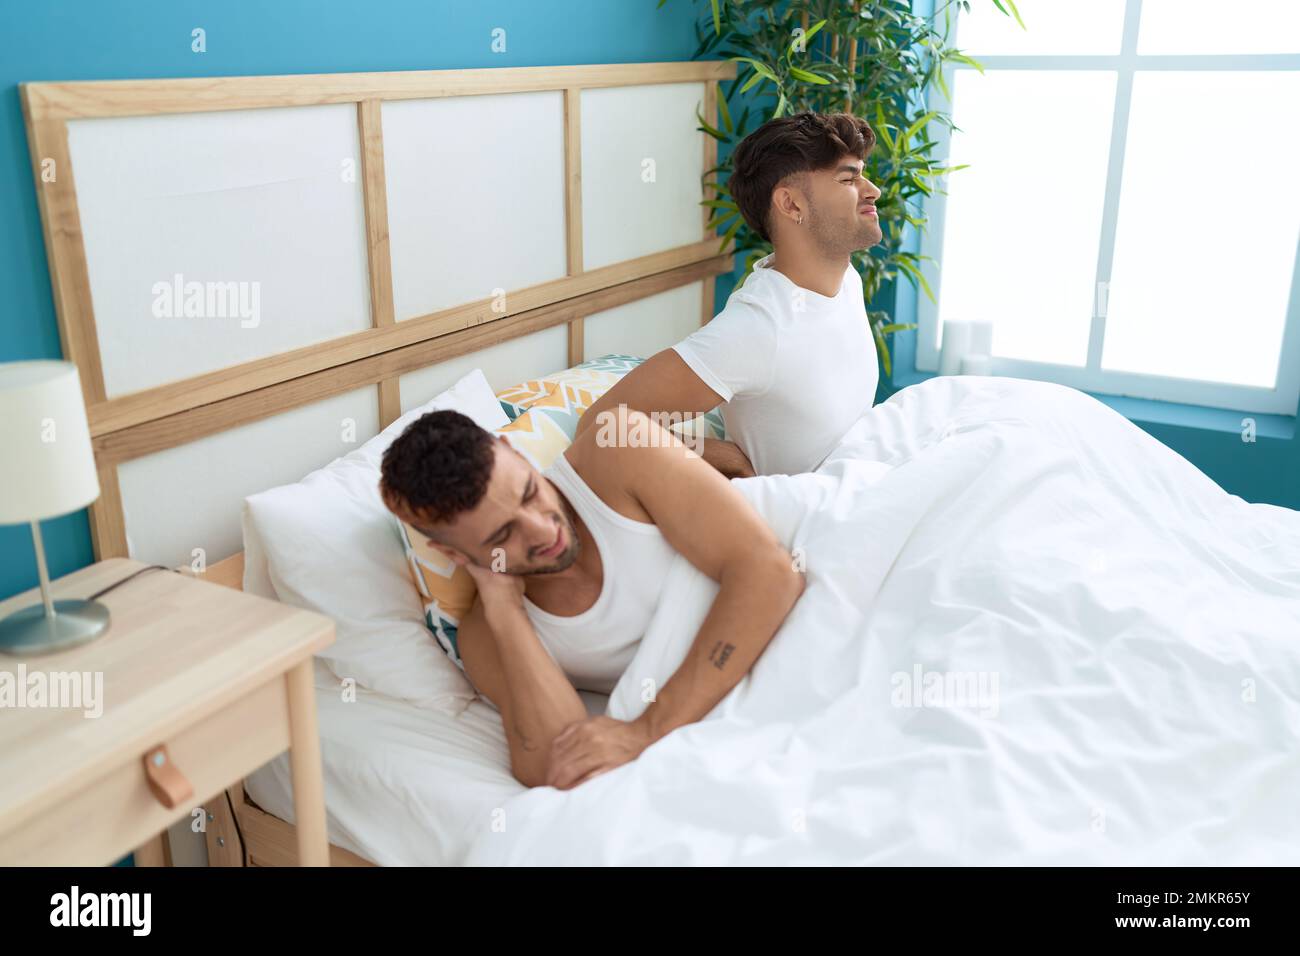 Zwei hispanische Männer, die unter Rückenverletzungen leiden, sitzen im  Bett im Schlafzimmer Stockfotografie - Alamy